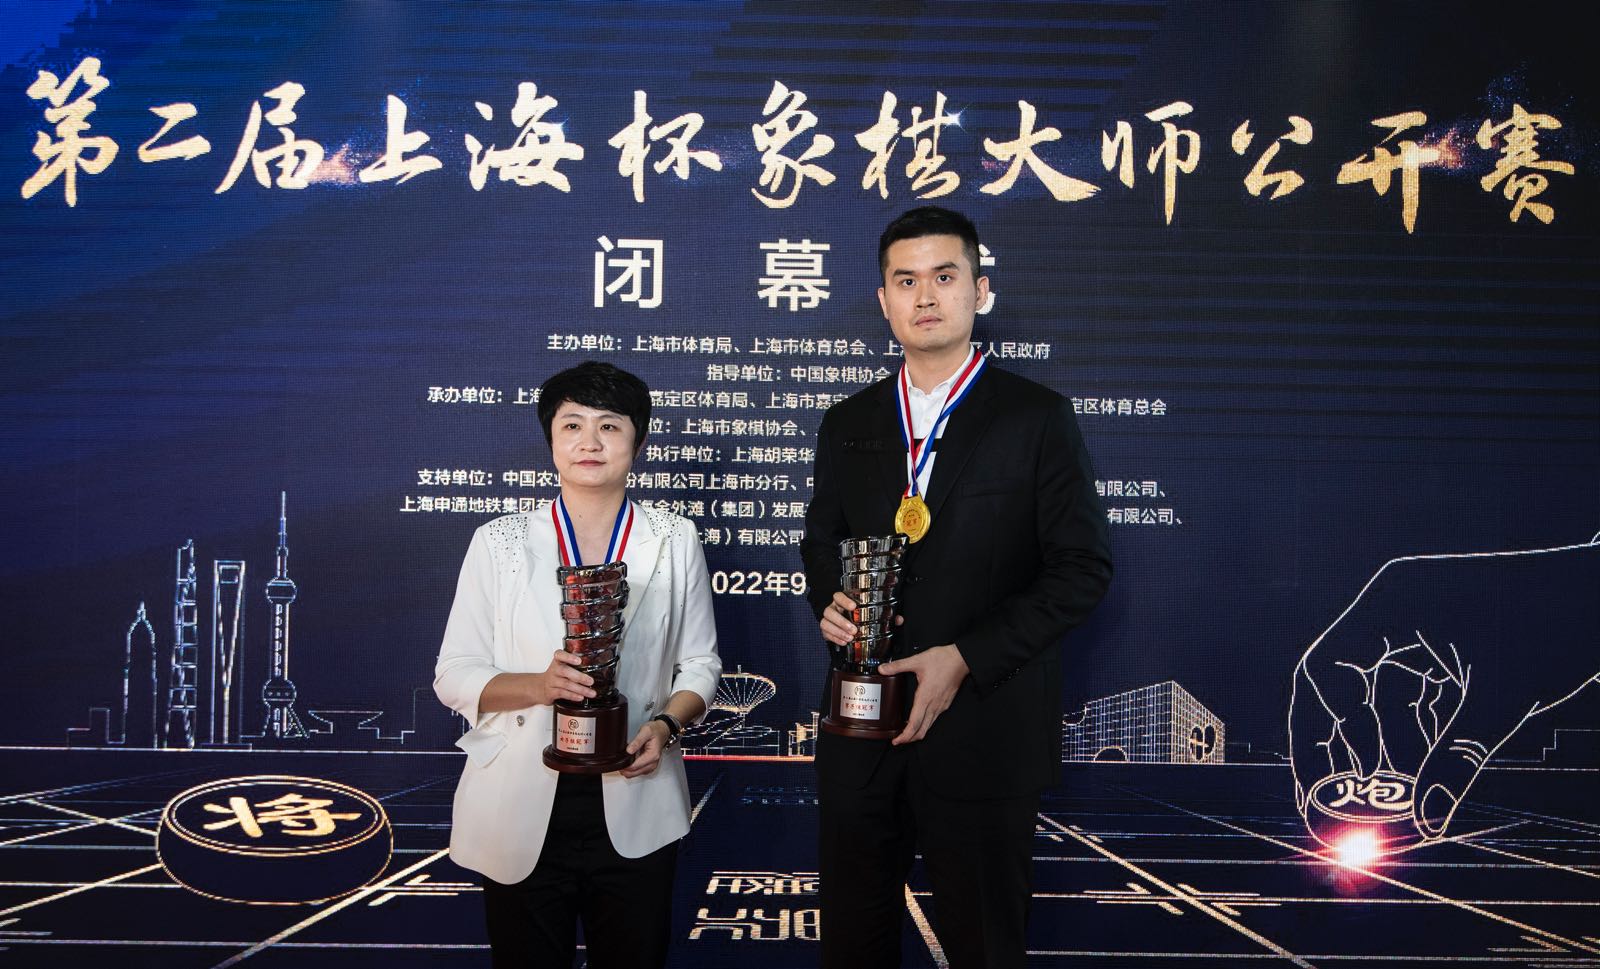 第二届上海杯象棋大师公开赛闭幕 王天一、陈幸琳夺冠